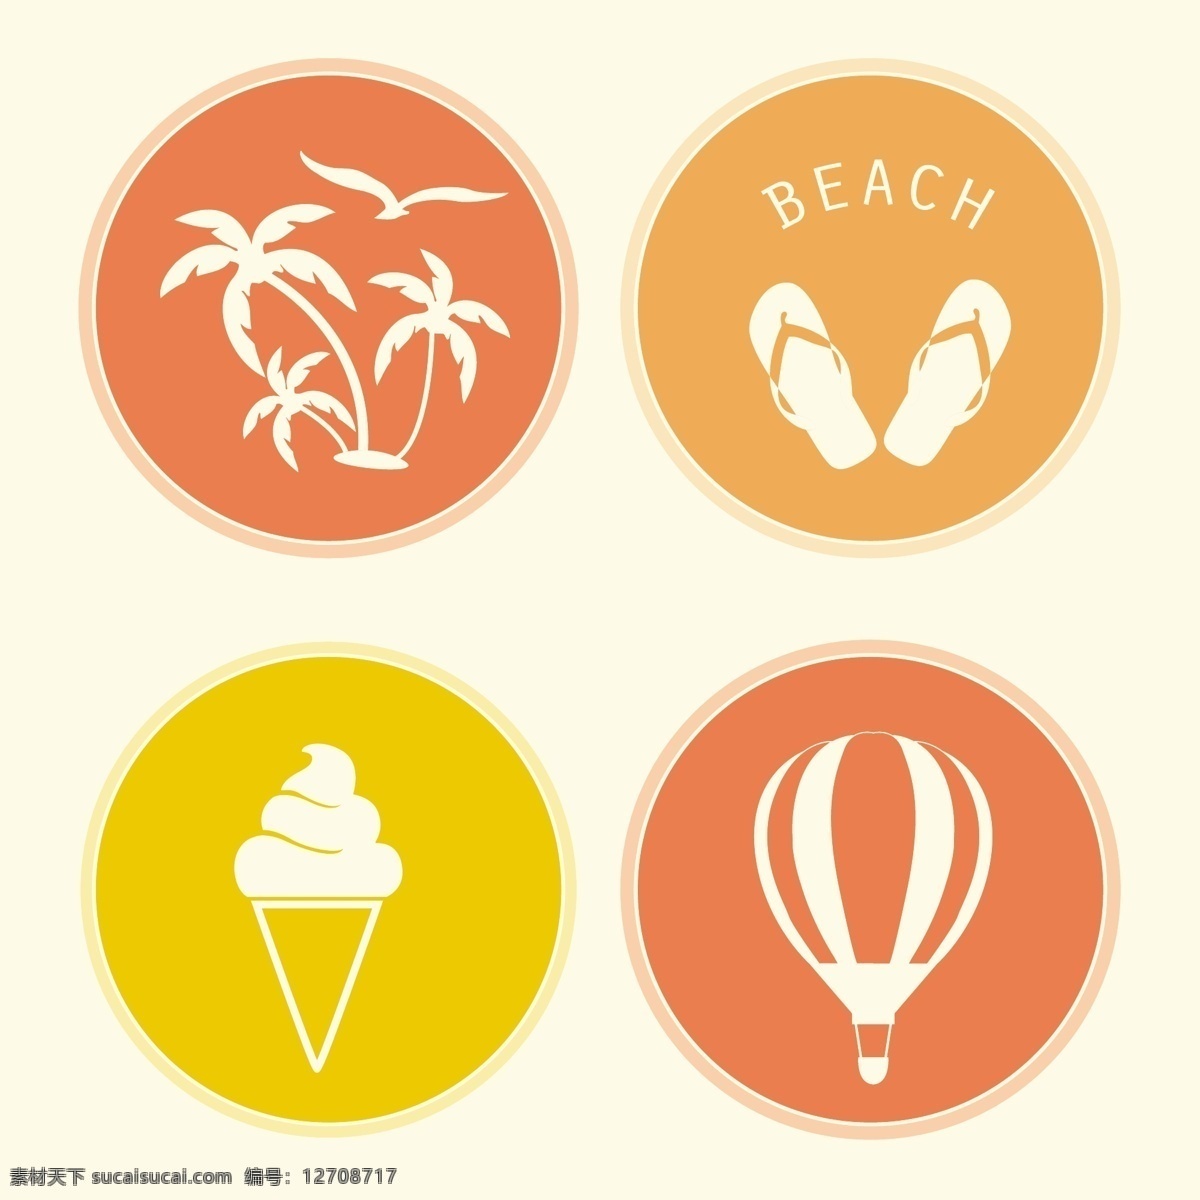 四夏天的徽章 标志 标签 夏季 徽章 邮票 海 海滩 贴纸 太阳 假日 印章 会徽 假期 符号 俱乐部 阳光